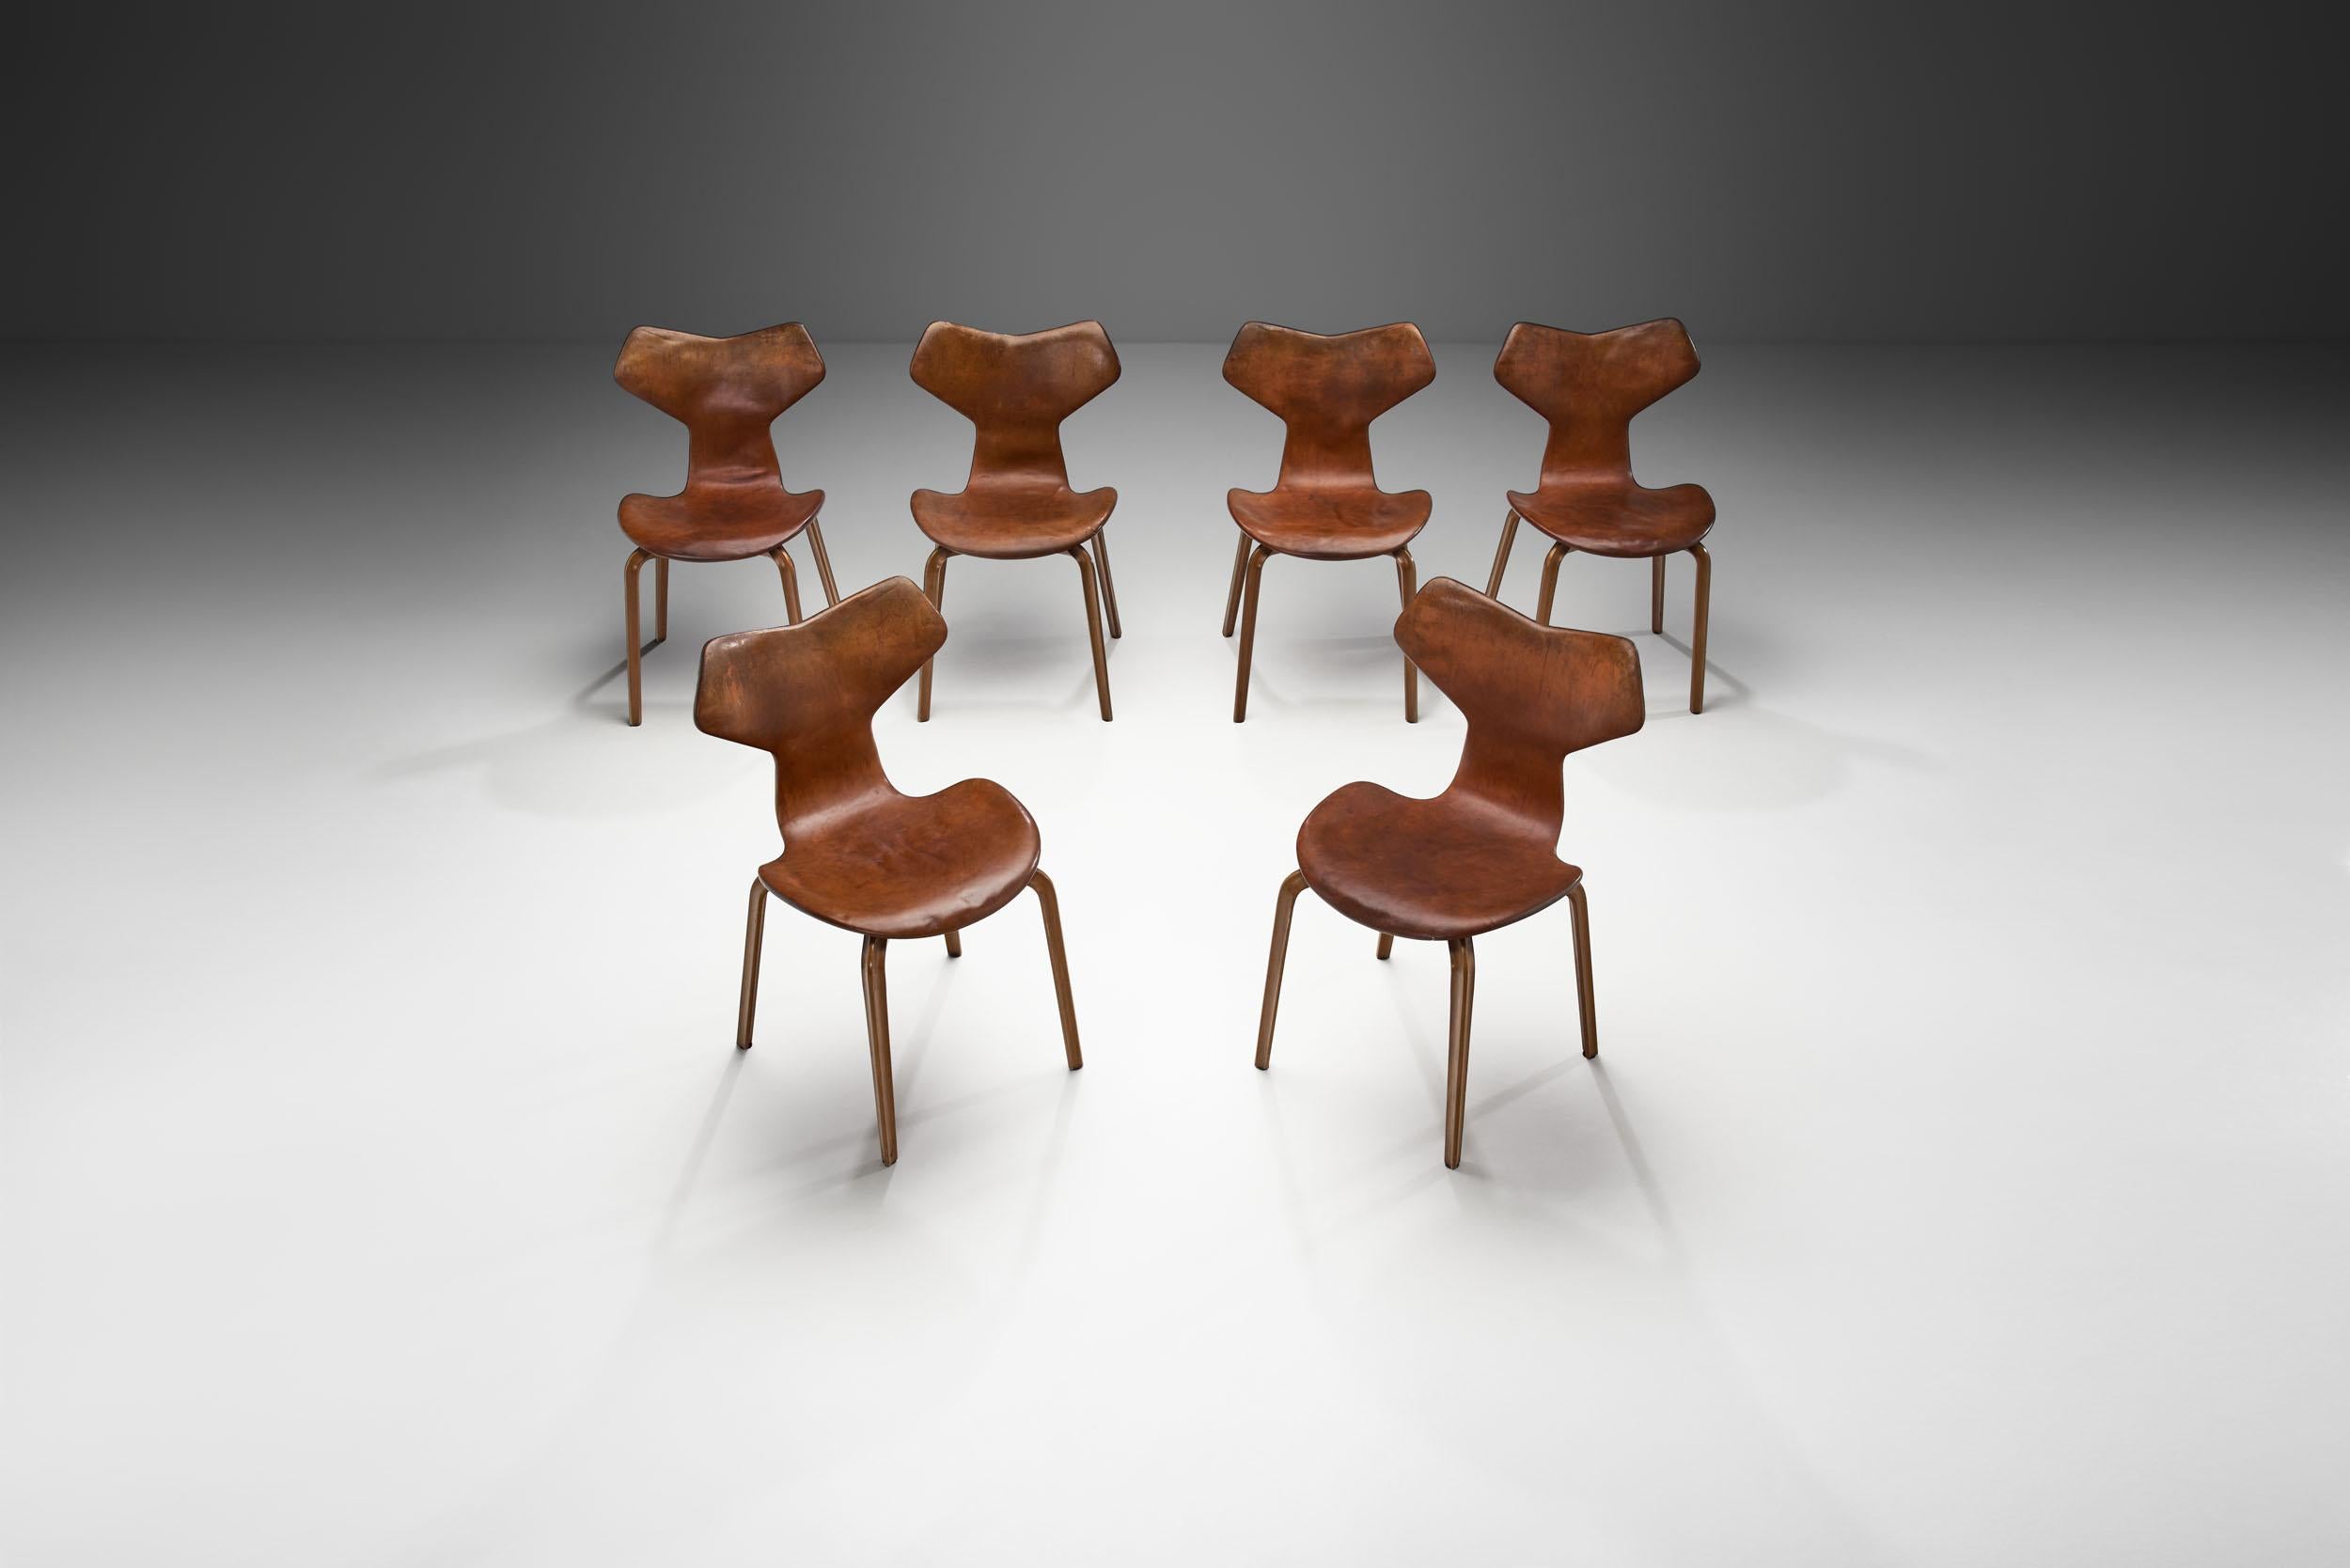 Danish Arne Jacobsen “Grand Prix” Chairs for Fritz Hansen, Denmark 1950s For Sale